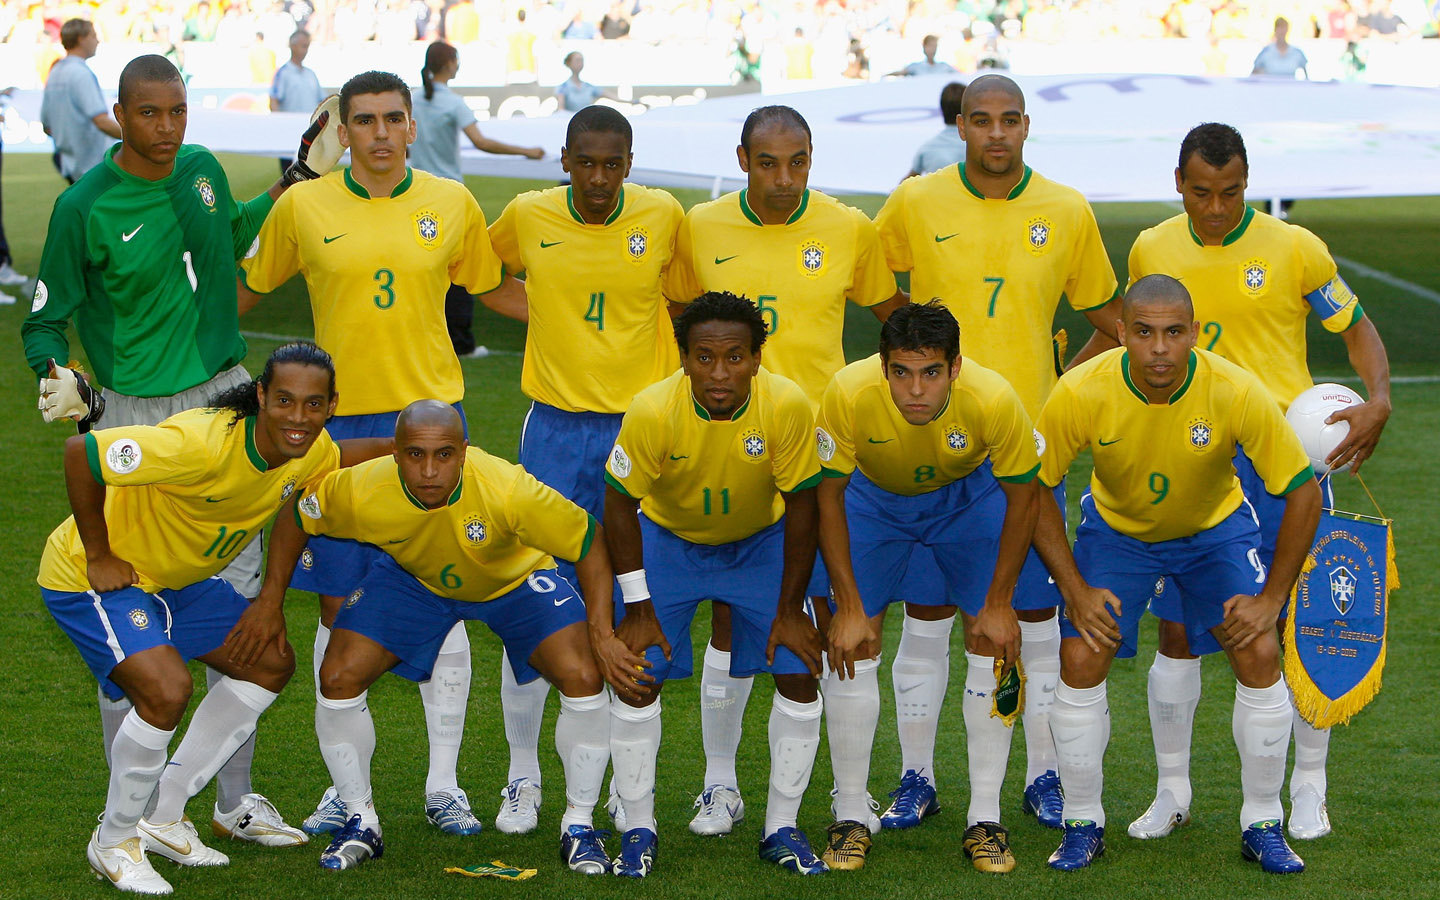 O Brasil nas Copas do Mundo: 2006 - os treze dias que abalaram o mundo